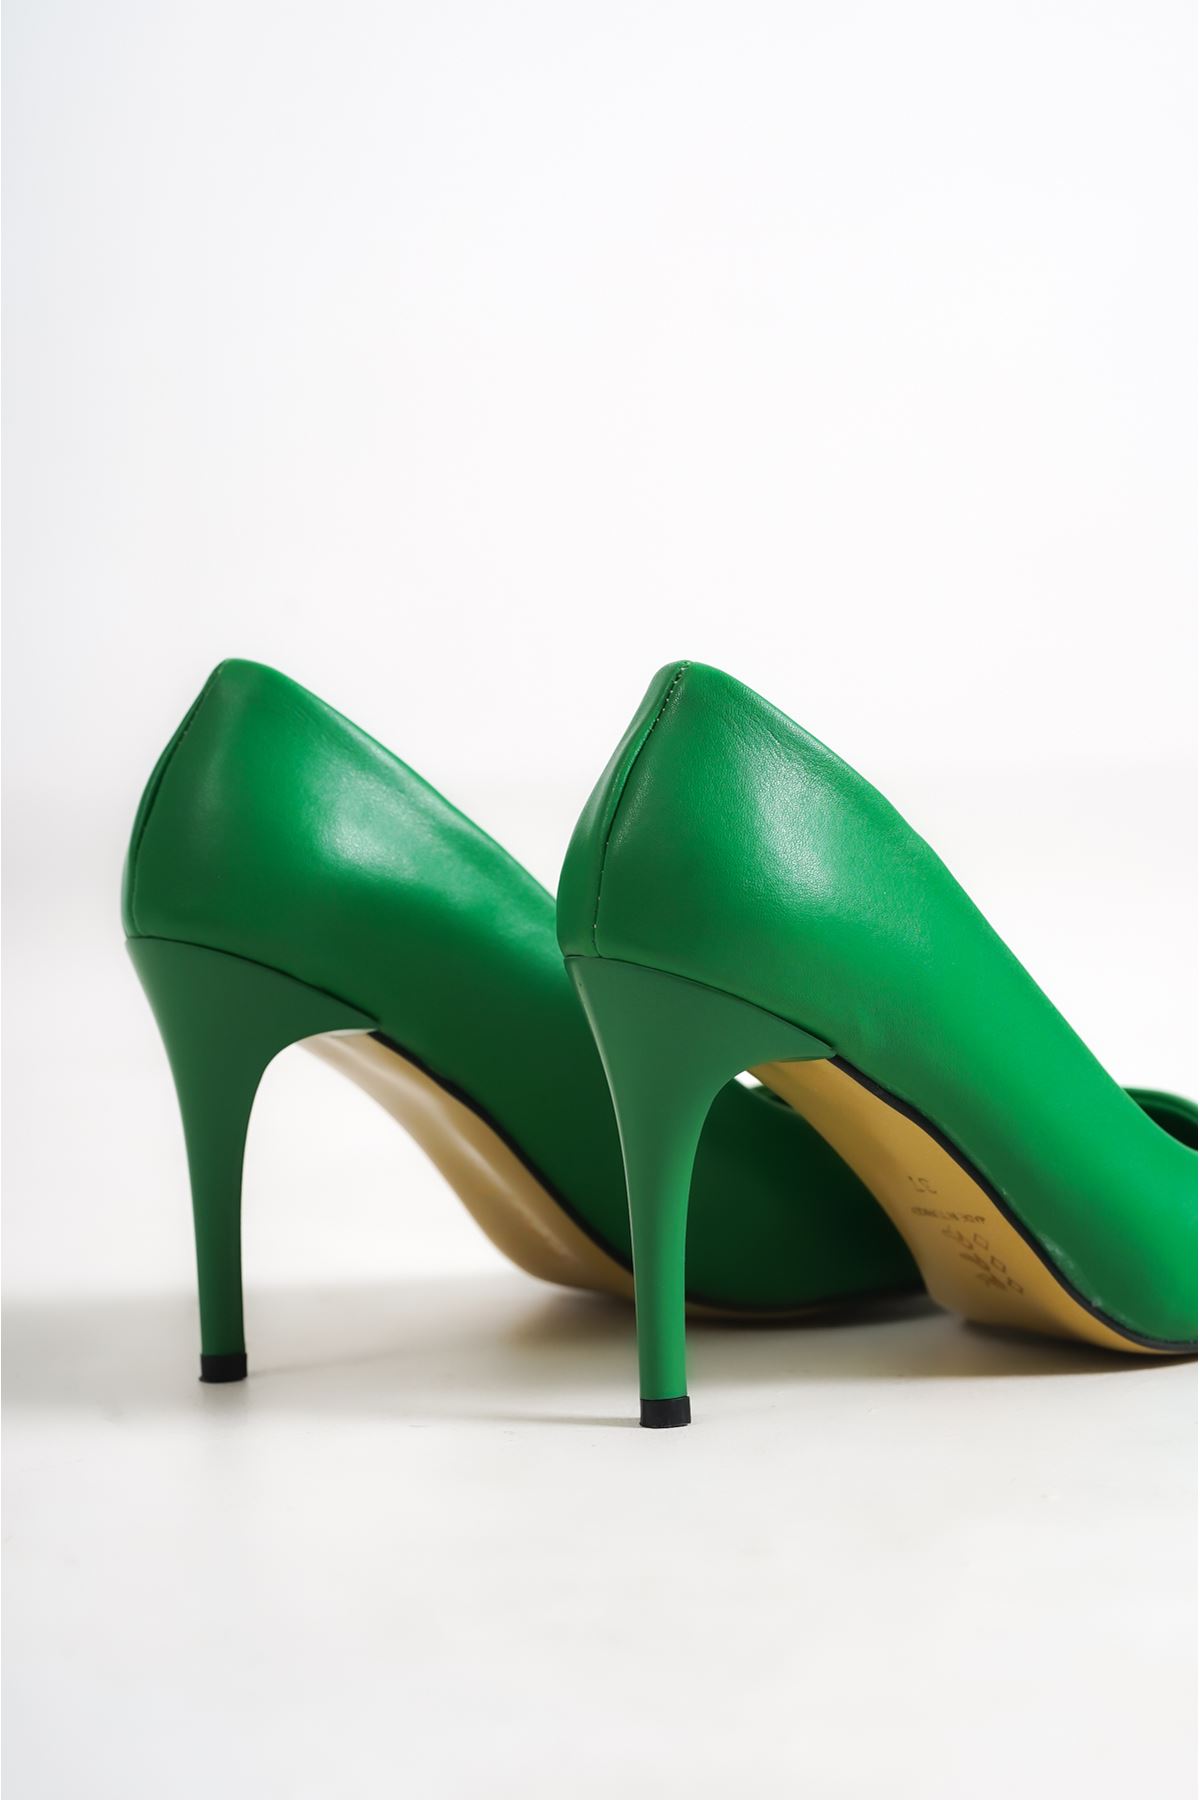 Richard Yeşil Mat Deri Kadın Topuklu Ayakkabı